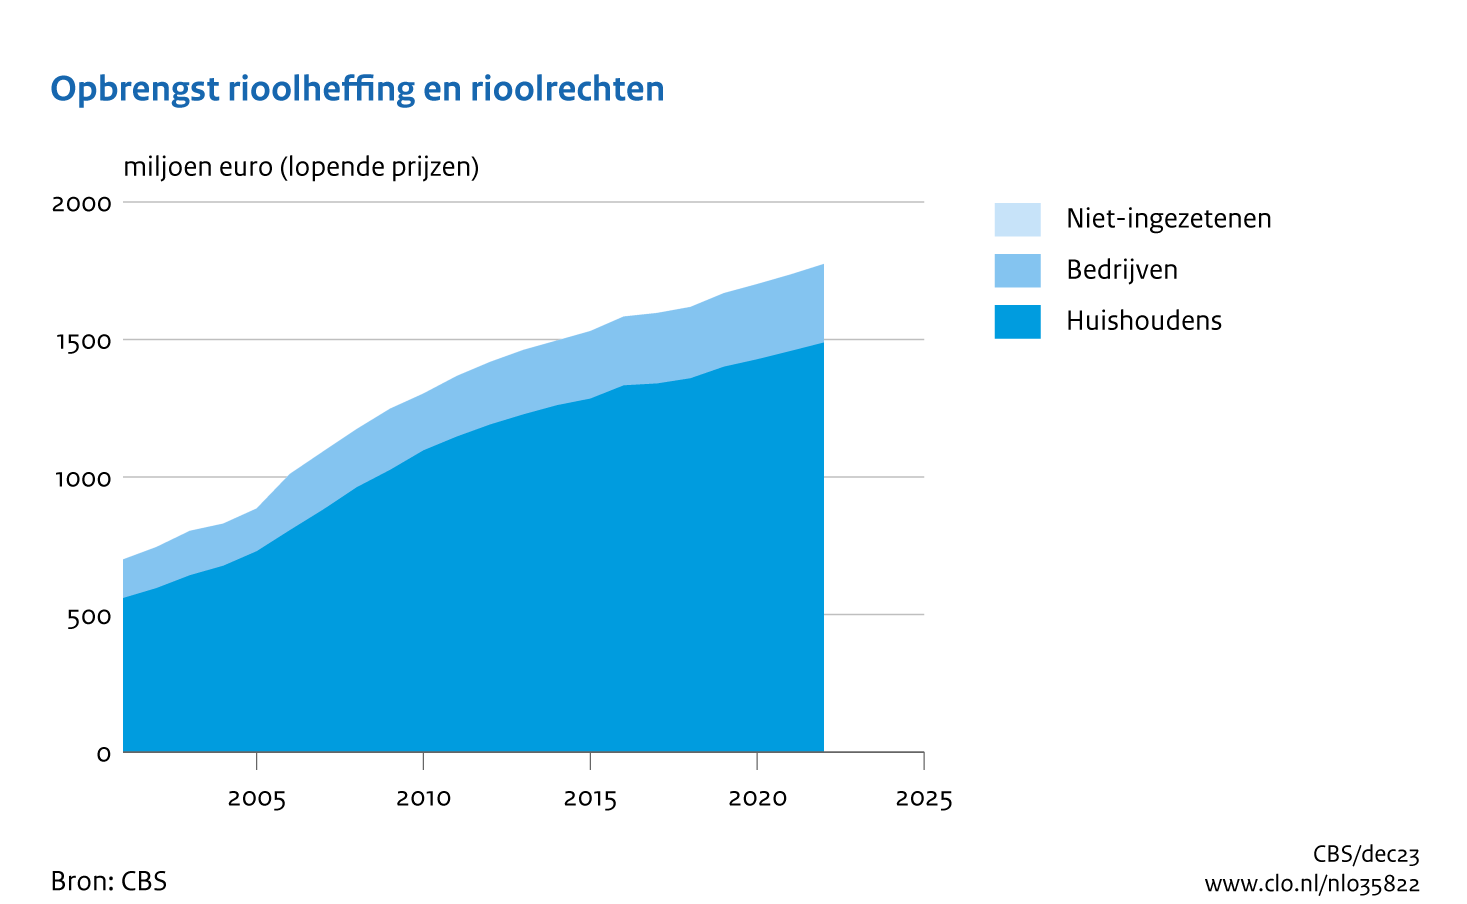 De rioolheffing en rioolrechten hebben een aandeel van 33 procent in de totale opbrengst uit de milieuheffingen. De opbrengsten uit de rioolheffing en rioolrechten zijn tussen 2001 en 2022 meer dan verdubbeld: van 0,7 naar 1,8 miljard euro. In 2022 nam de opbrengst met 2% toe.